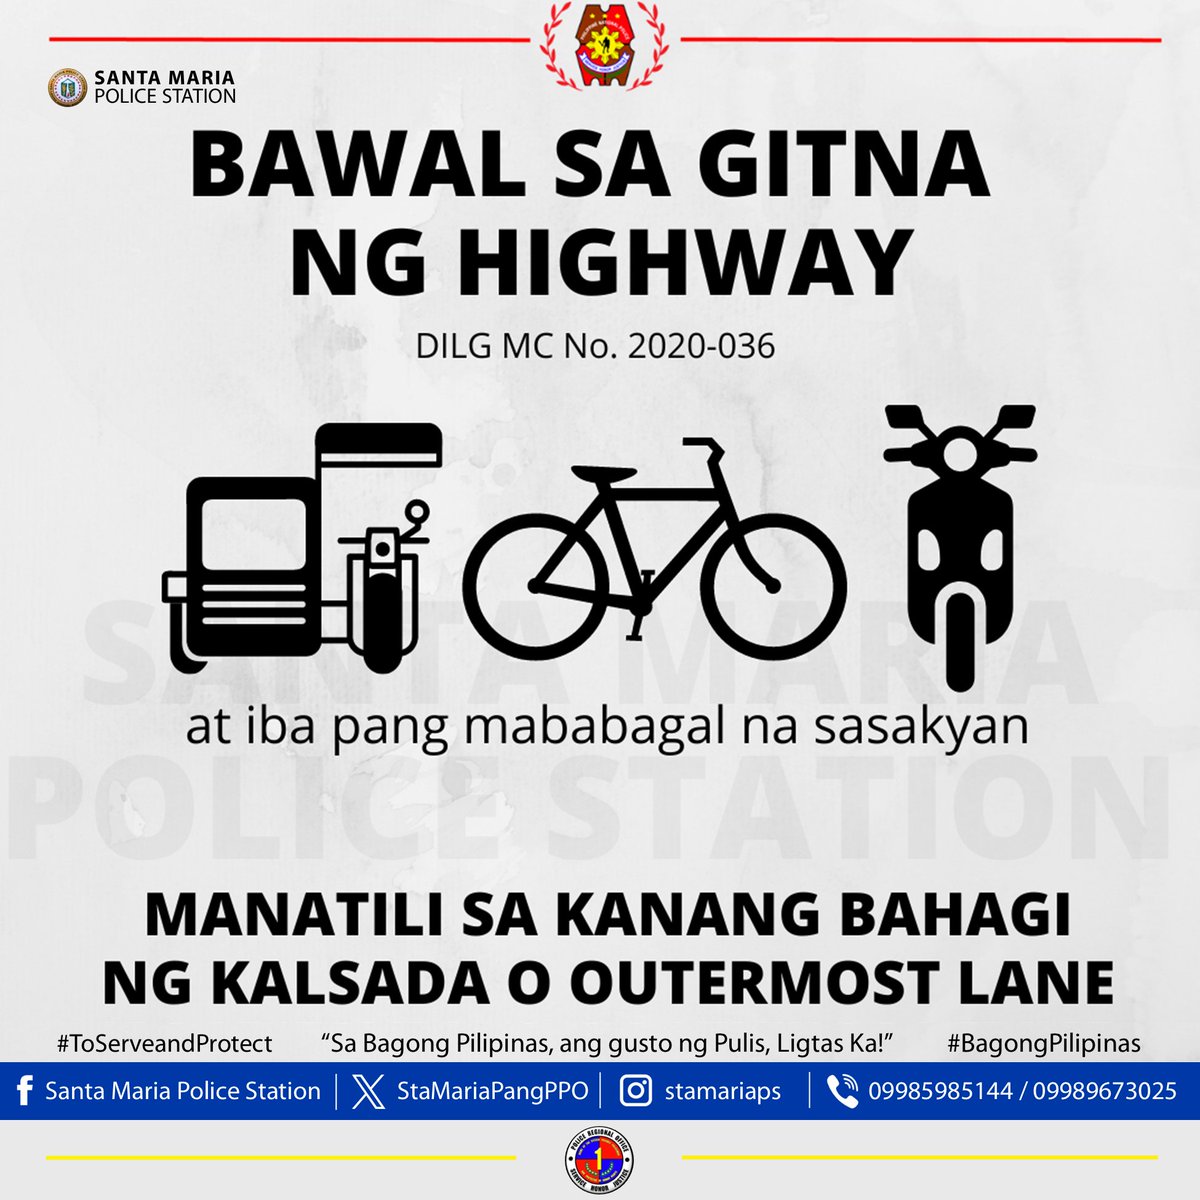 Manatili lamang sa kanang bahagi ng kalsada ang mga tricycle, motorsiklo, bisekleta, e-bike at iba pang mababagal na sasakyan. '𝐒𝐚 𝐁𝐚𝐠𝐨𝐧𝐠 𝐏𝐢𝐥𝐢𝐩𝐢𝐧𝐚𝐬, 𝐚𝐧𝐠 𝐆𝐮𝐬𝐭𝐨 𝐧𝐠 𝐏𝐮𝐥𝐢𝐬, 𝐋𝐢𝐠𝐭𝐚𝐬 𝐊𝐚!' #BagongPilipinas #ToServeandProtect